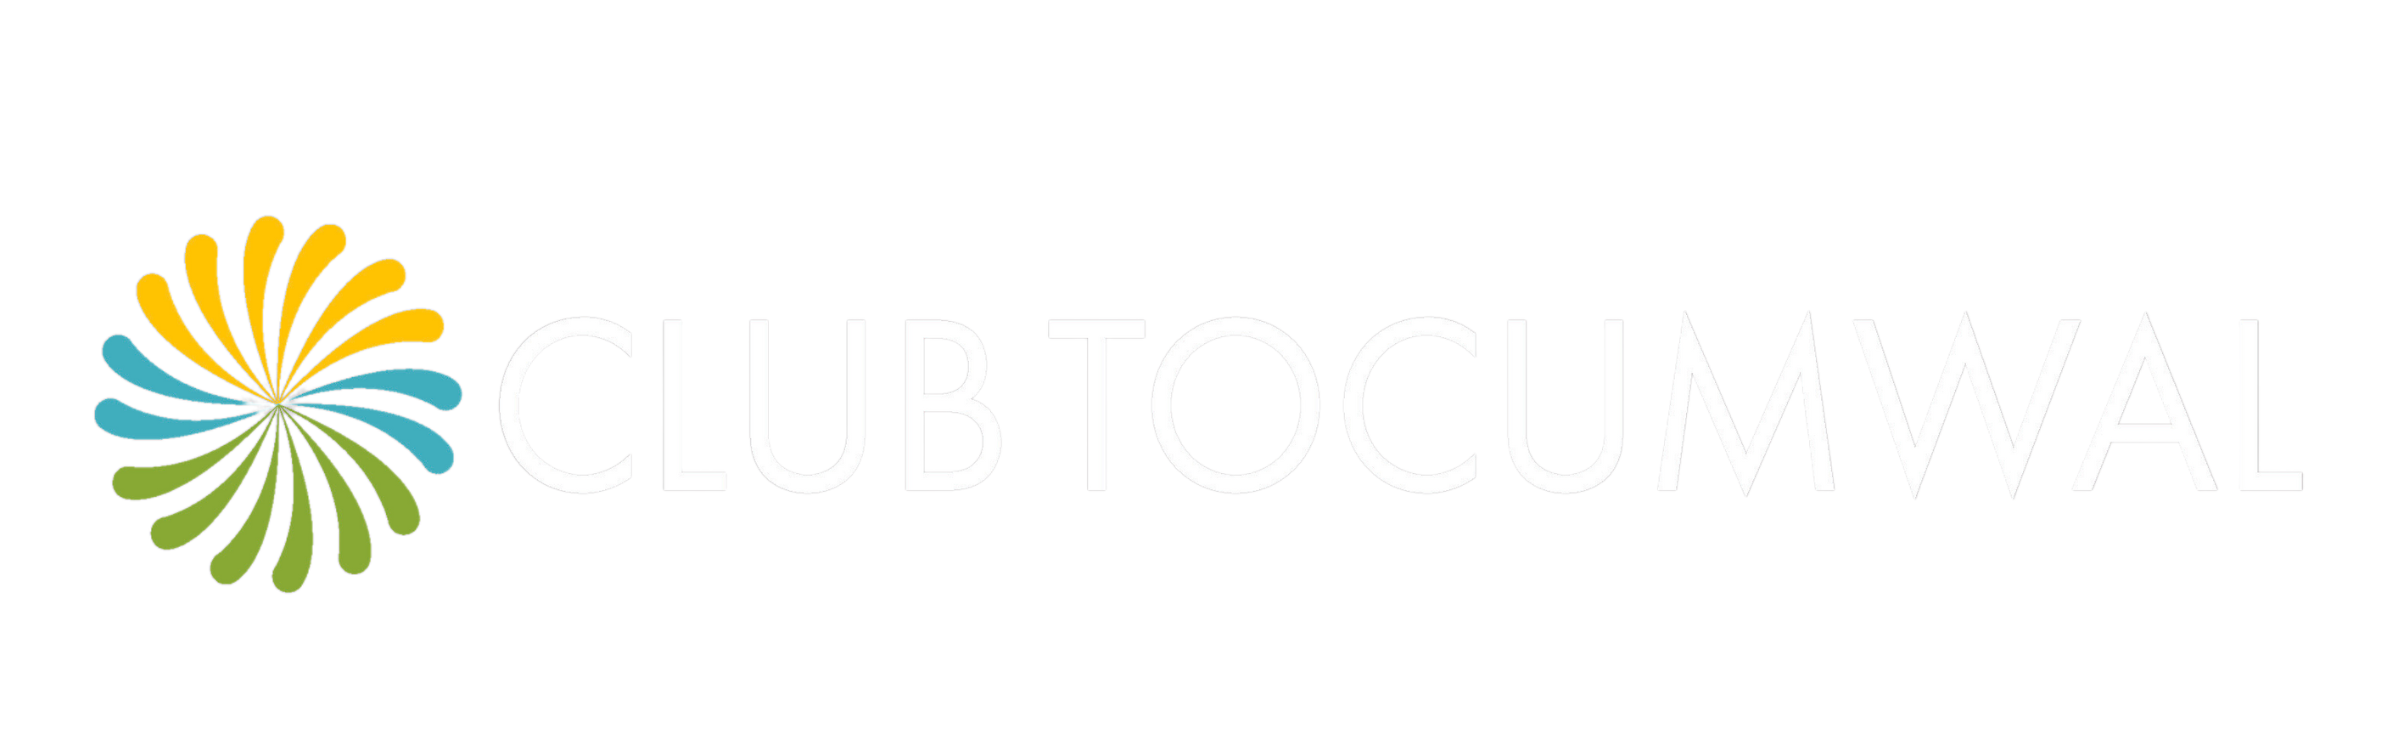 Club Tocumwal